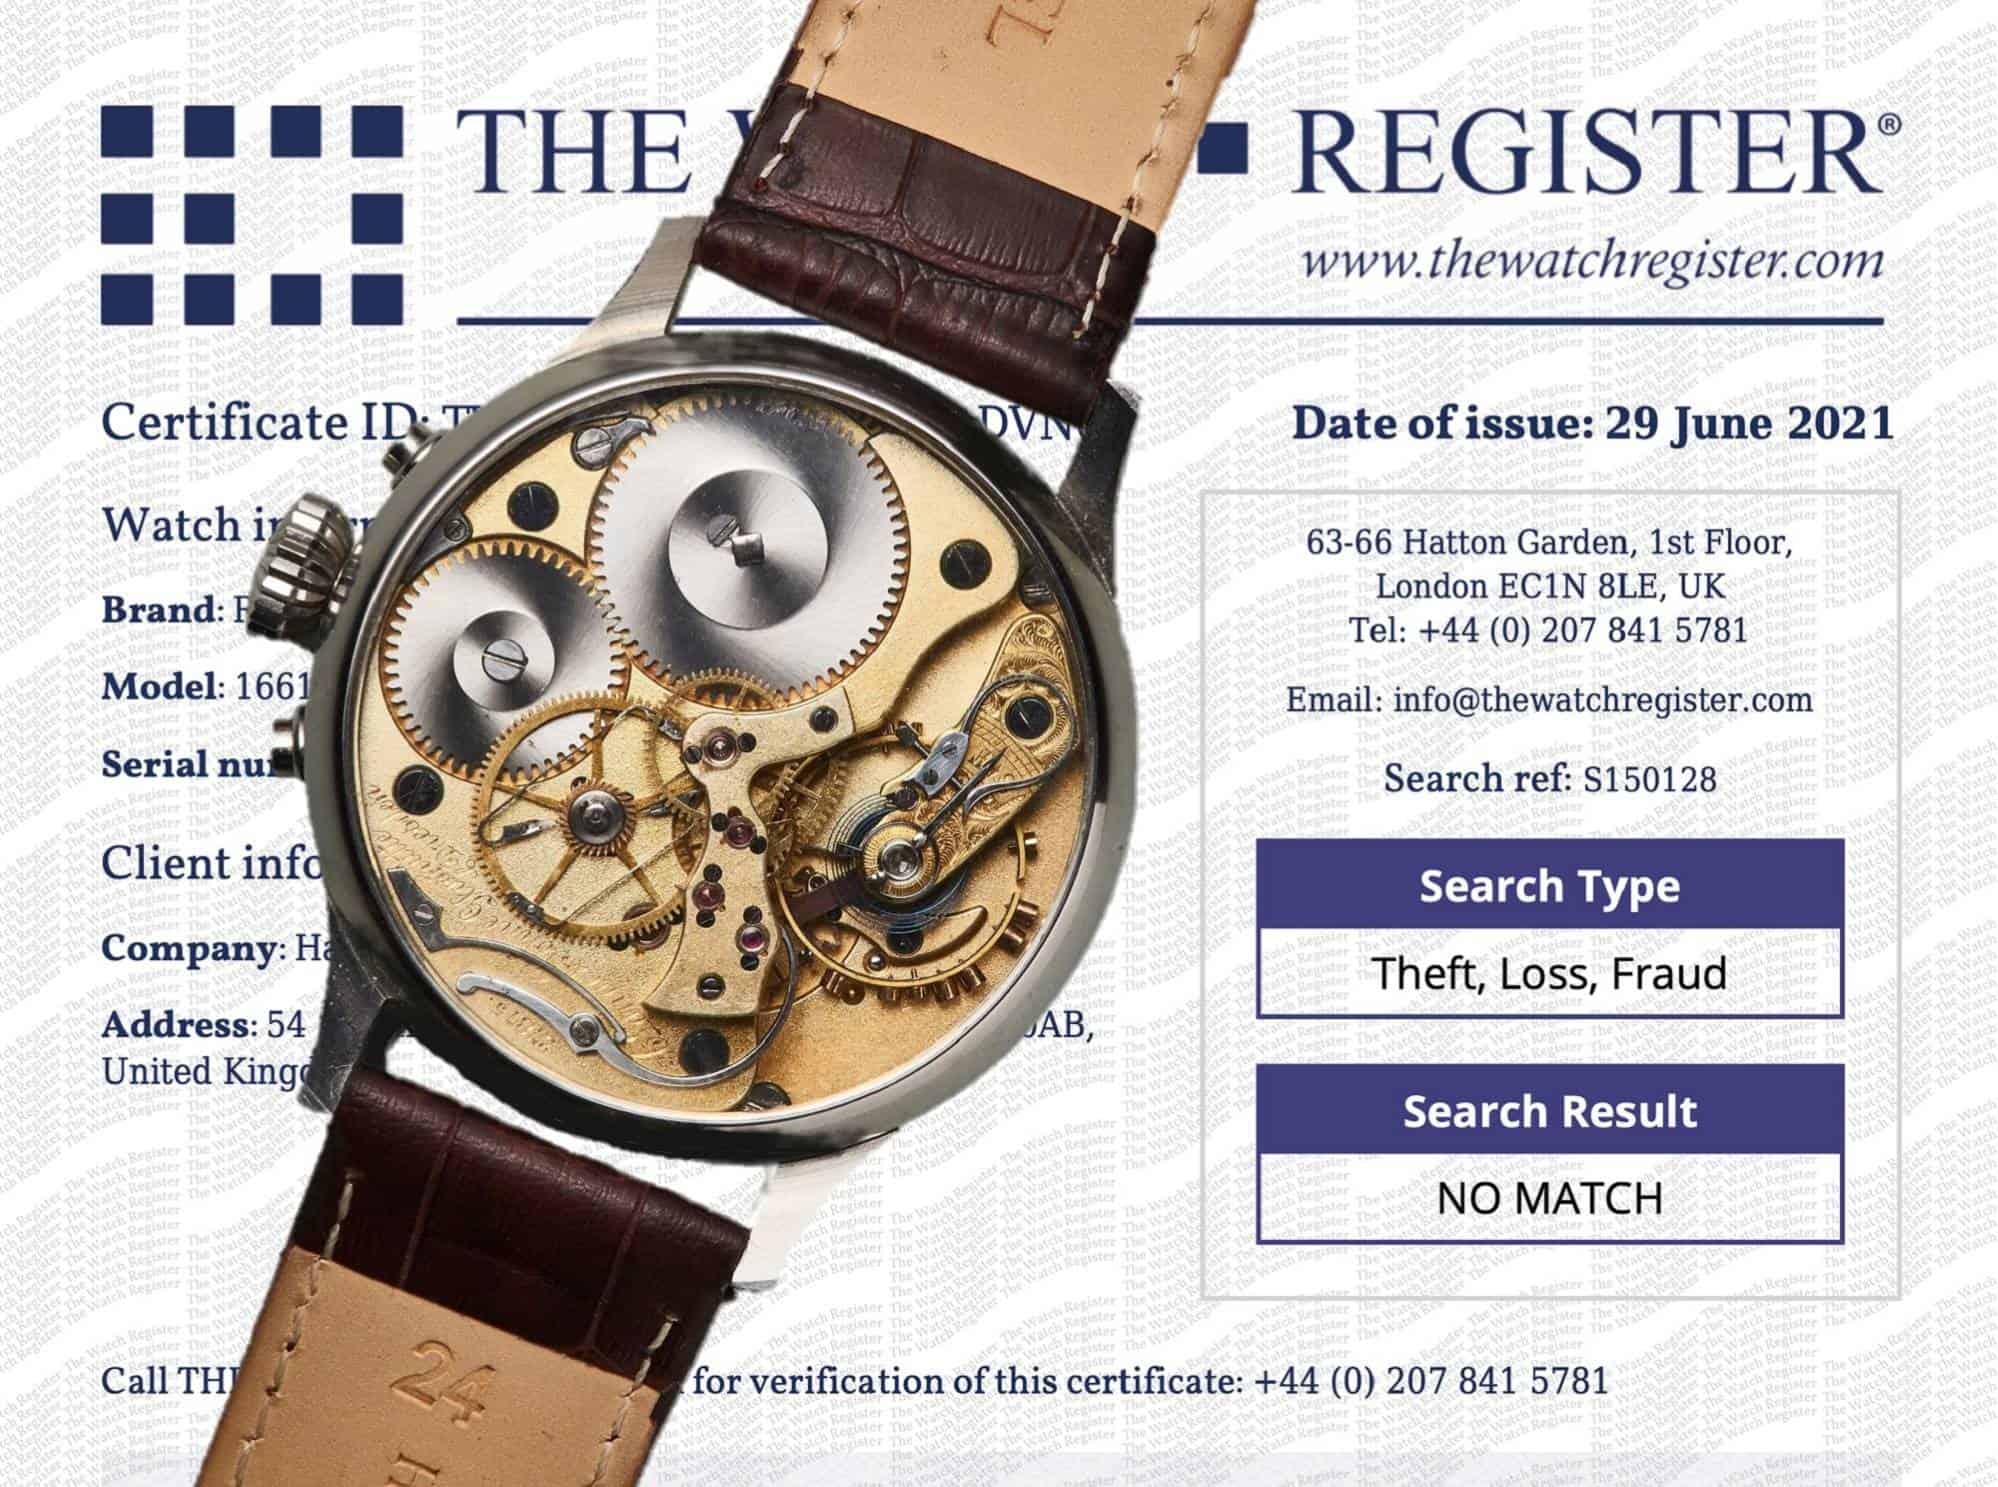 Gestohlene Uhr bei The Watch Register